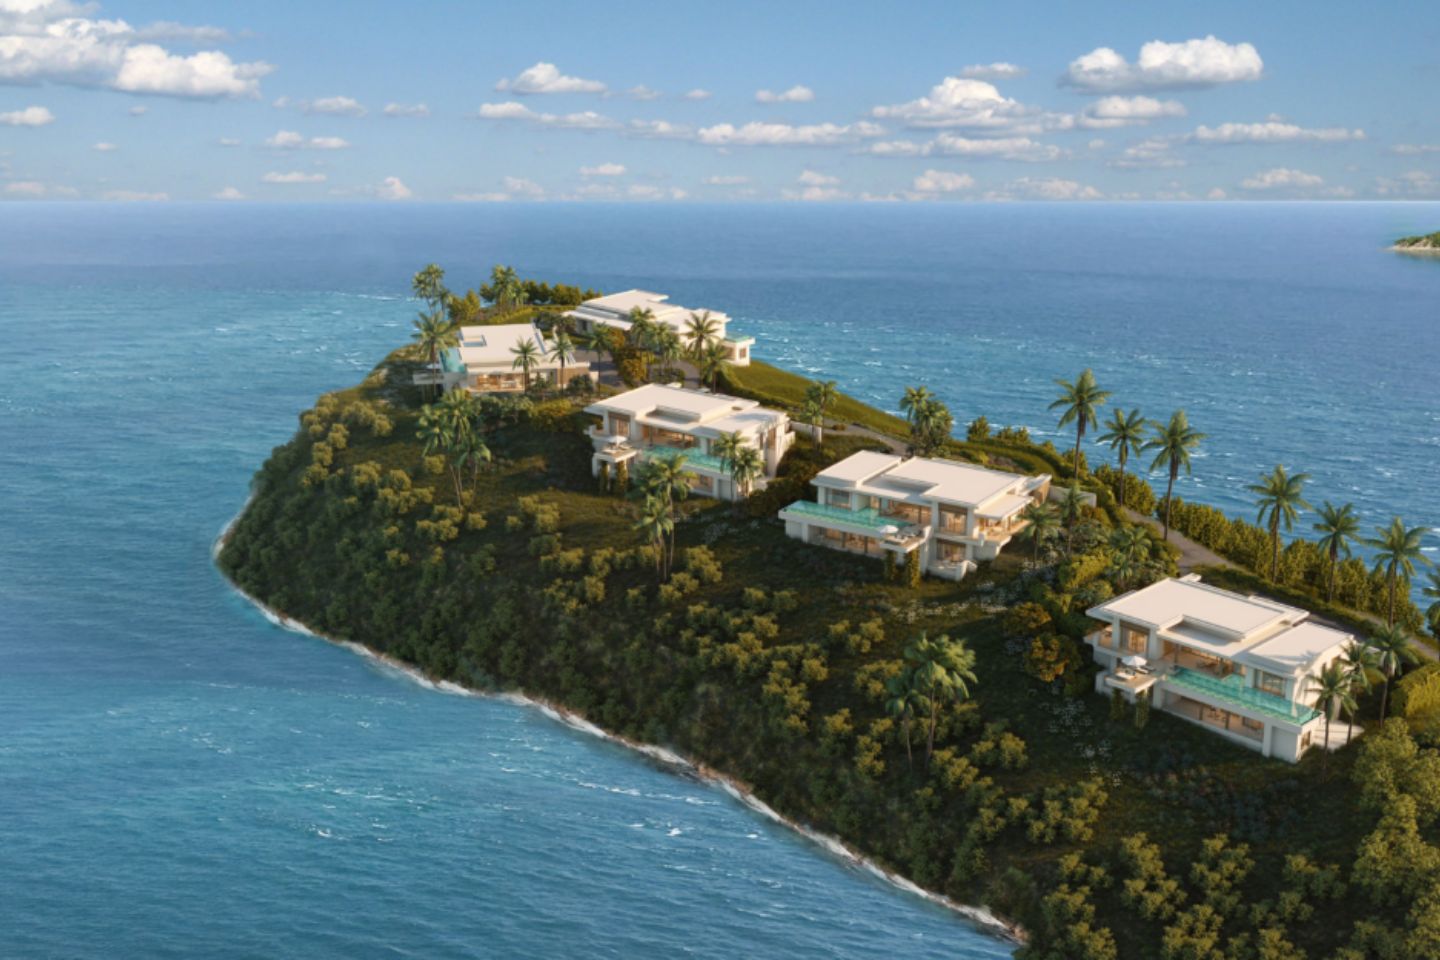 This Luxury Resort Has 56 Pool Suites, Unbeatable Views Of Grenada, And It’s Opening Soon